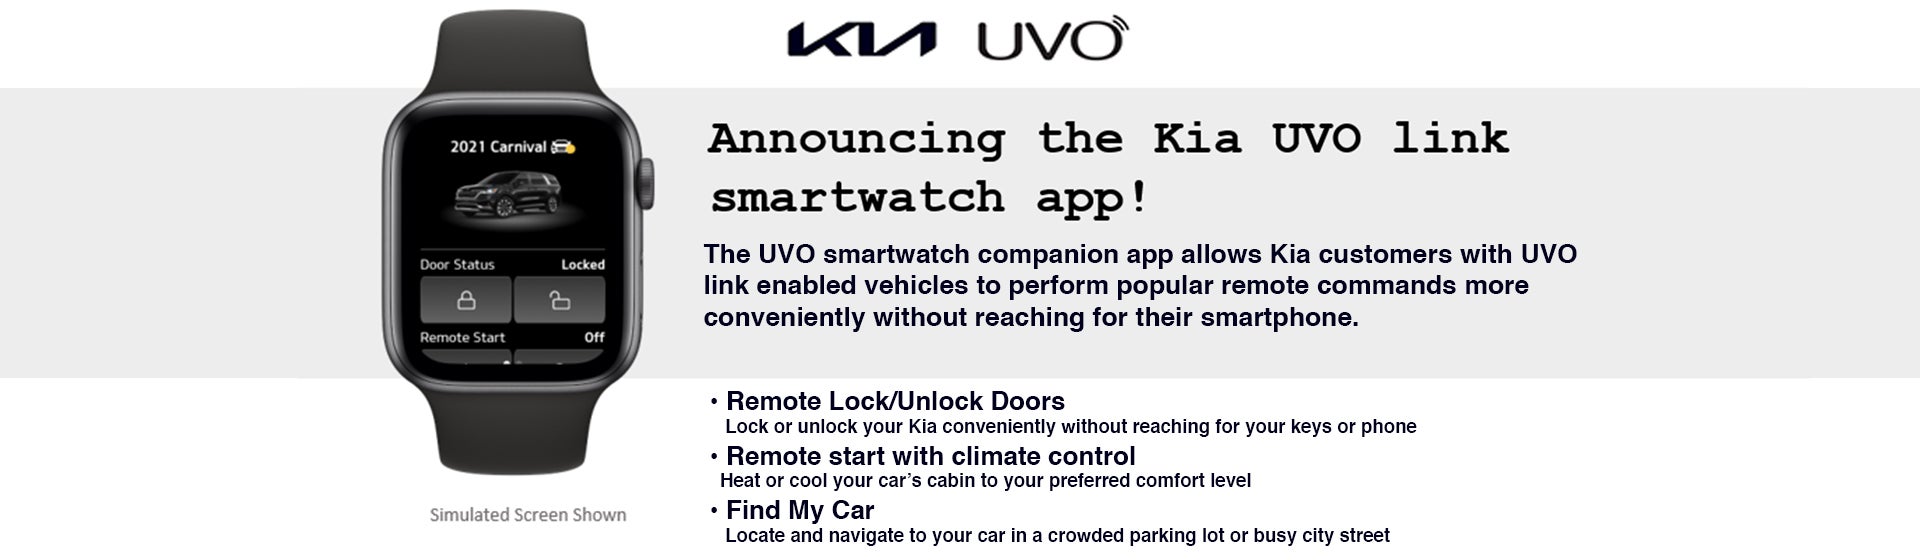 Kia UVO Smartwatch App